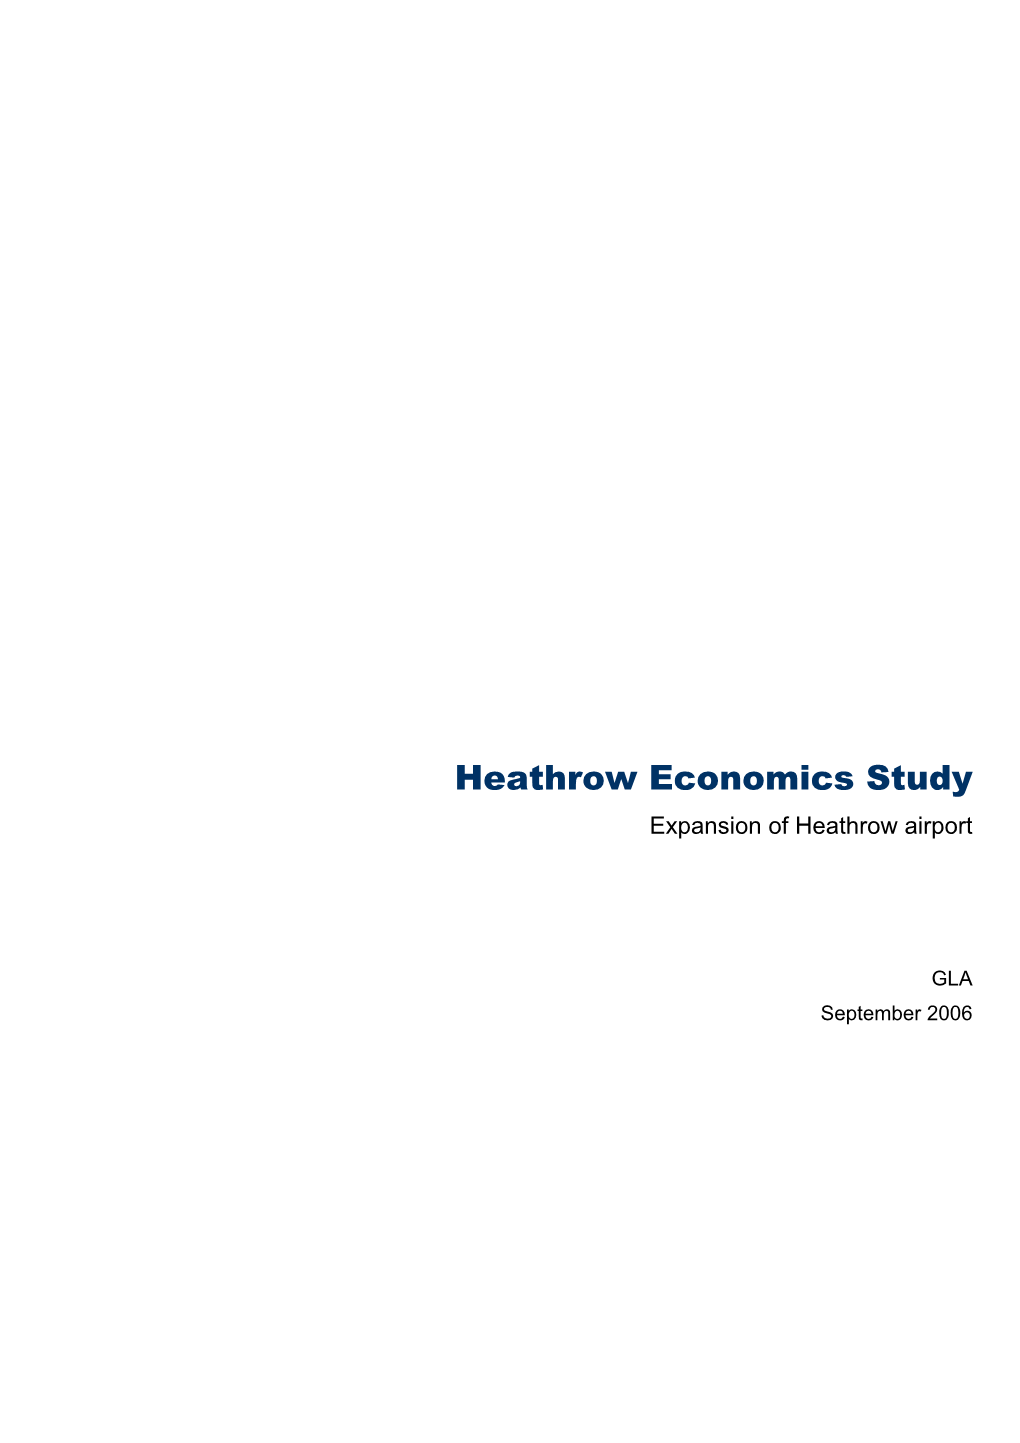 Heathrow Economics Study Expansion of Heathrow Airport